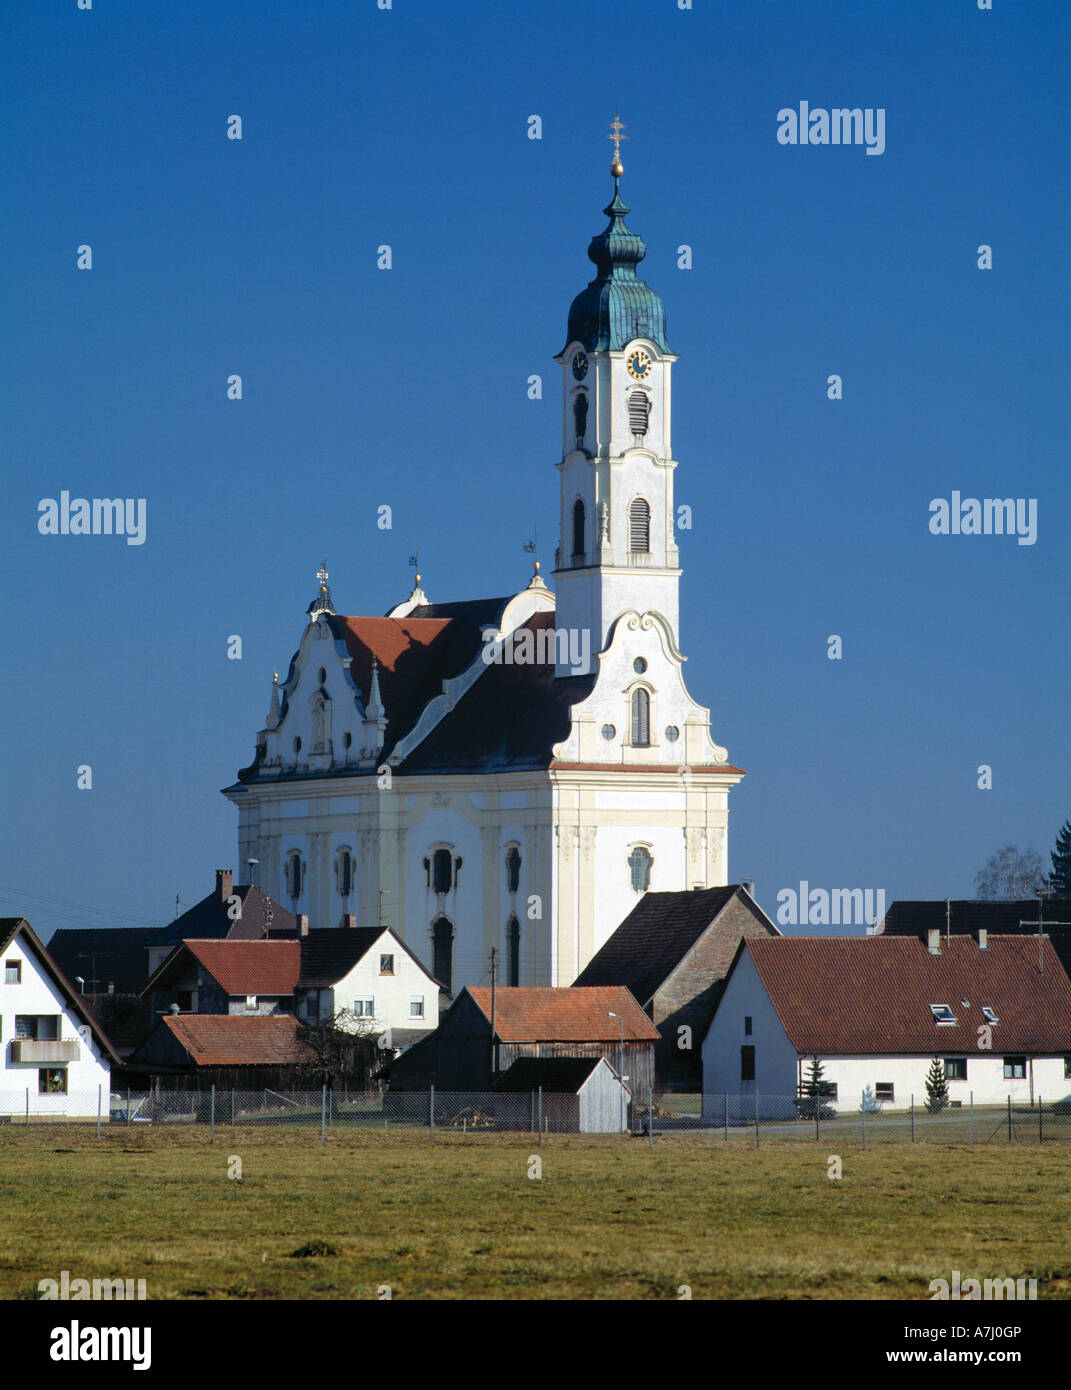 Ortspanorama von Steinhausen mit Wallfahrtskirche, Bad Schussenried-Steinhausen, Oberschwaben, Baden-Wuerttemberg Foto Stock